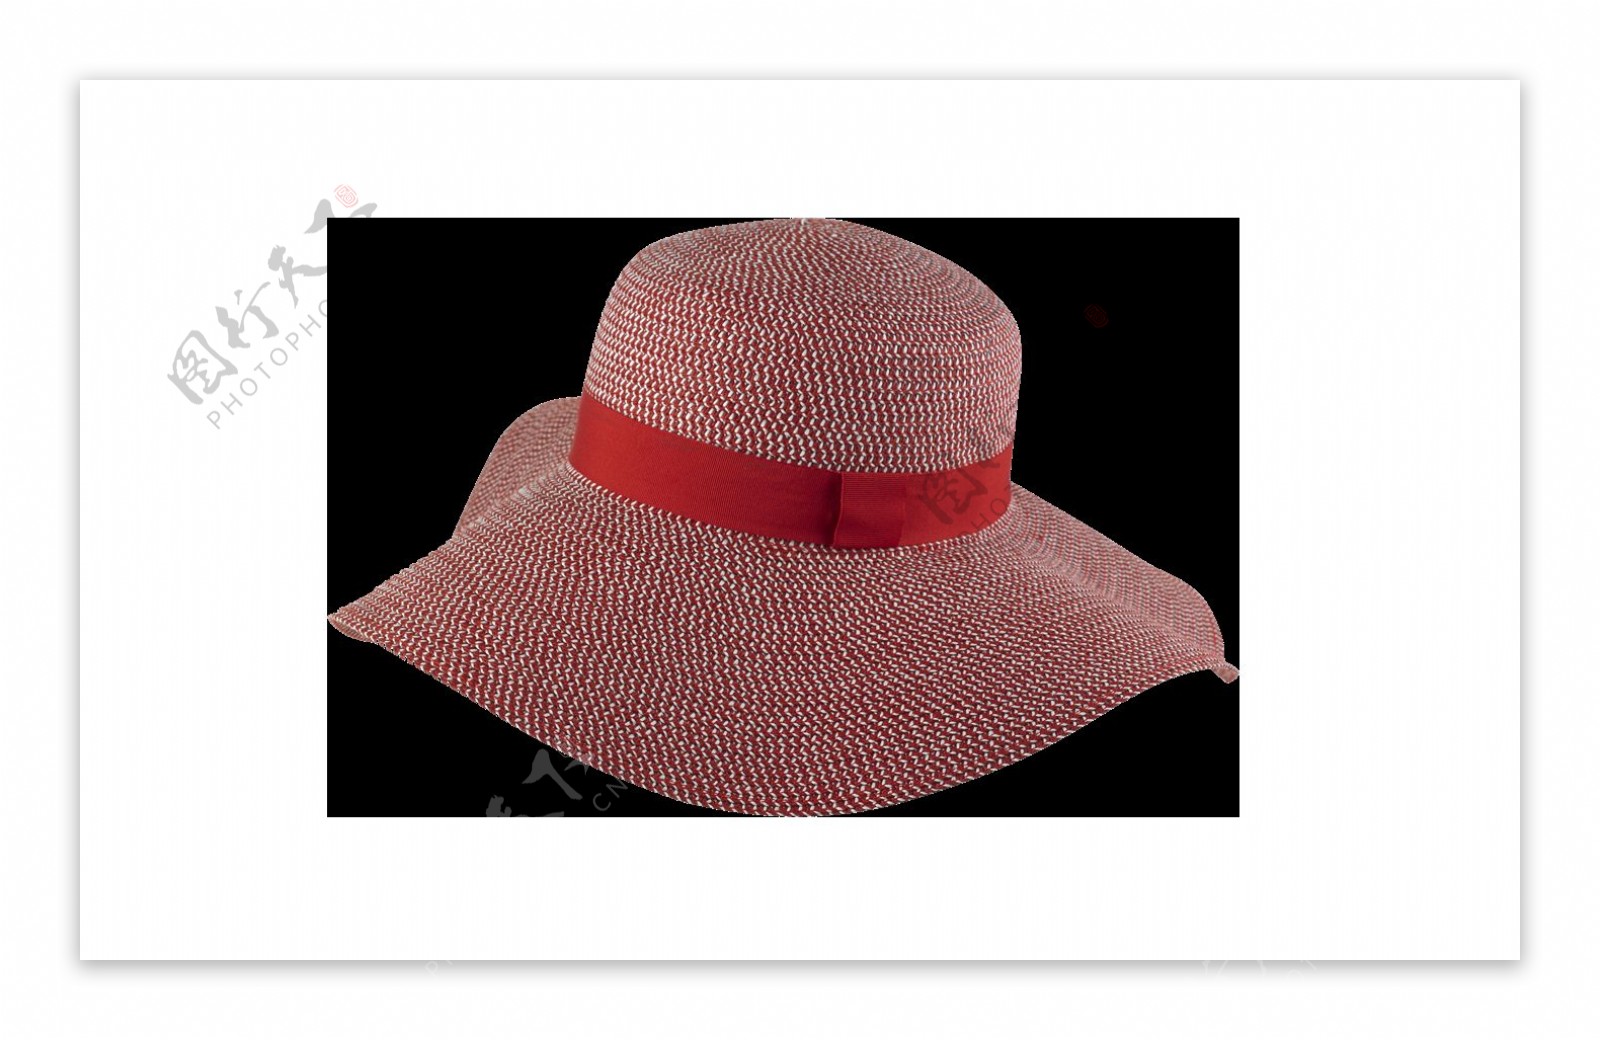 女士红色大帽檐防晒帽png元素